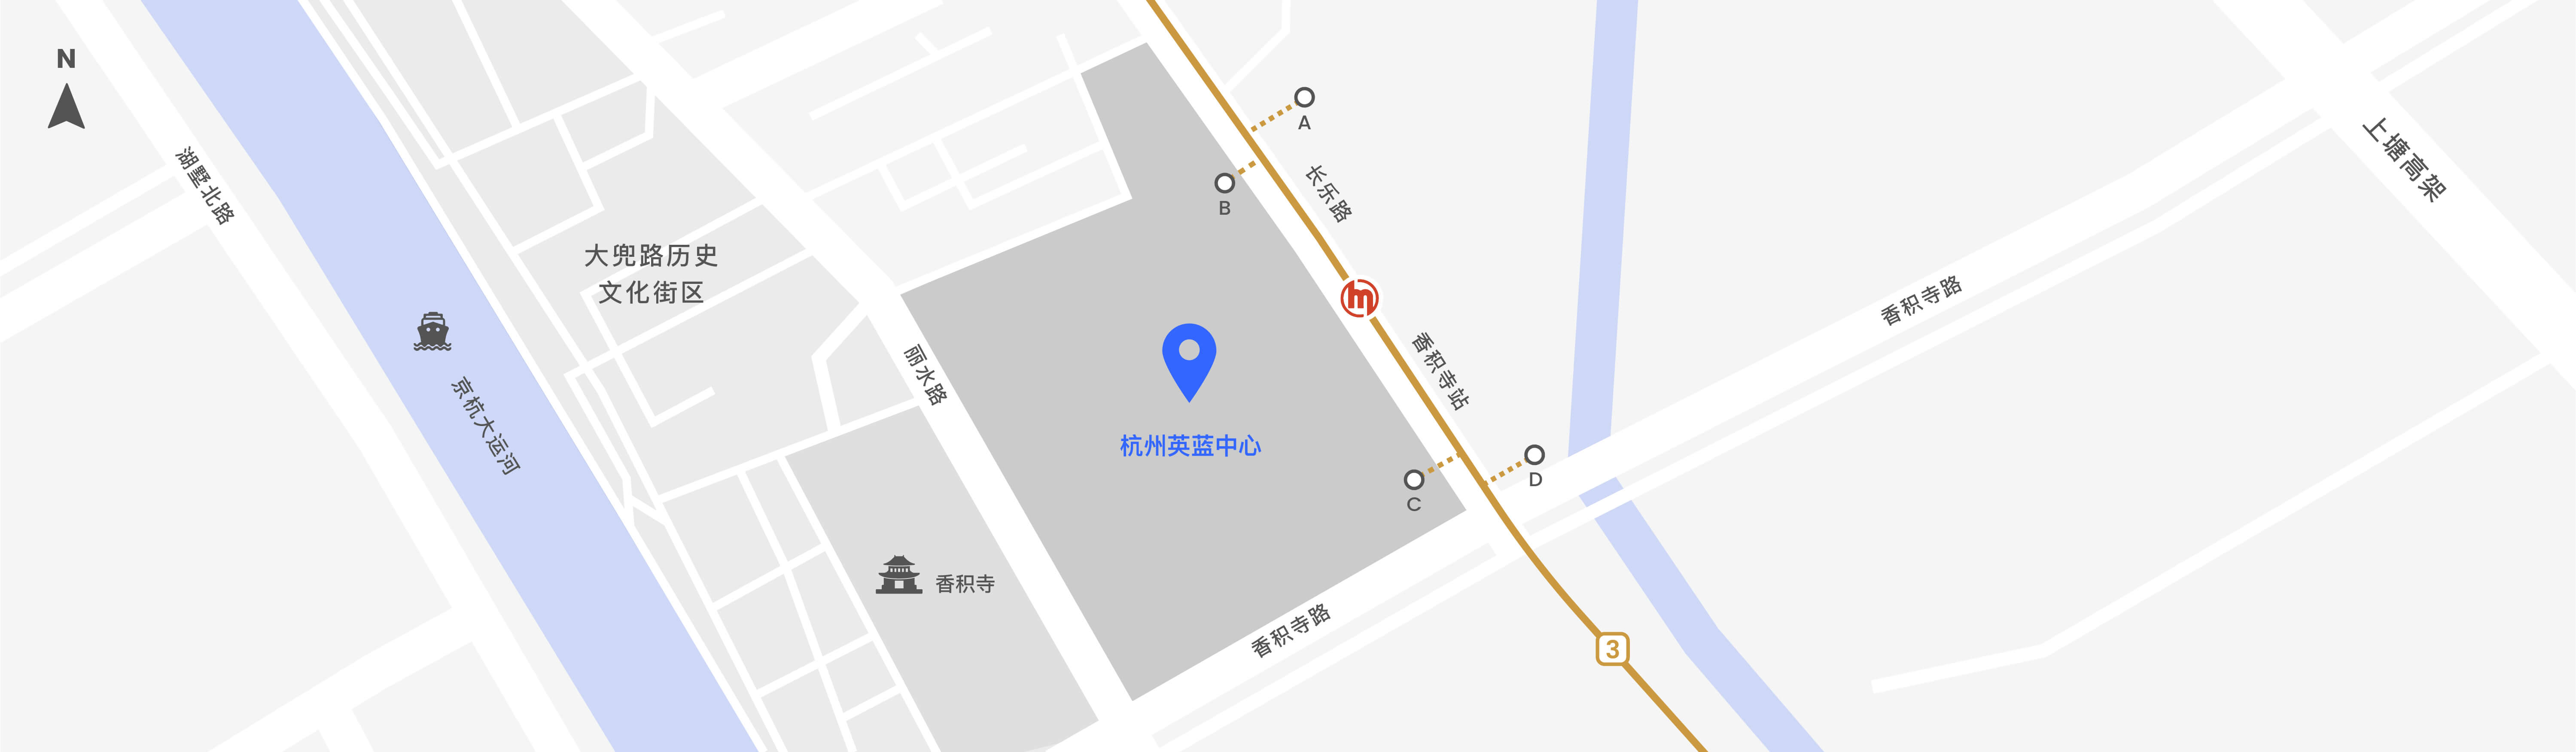 杭州英蓝中心地址